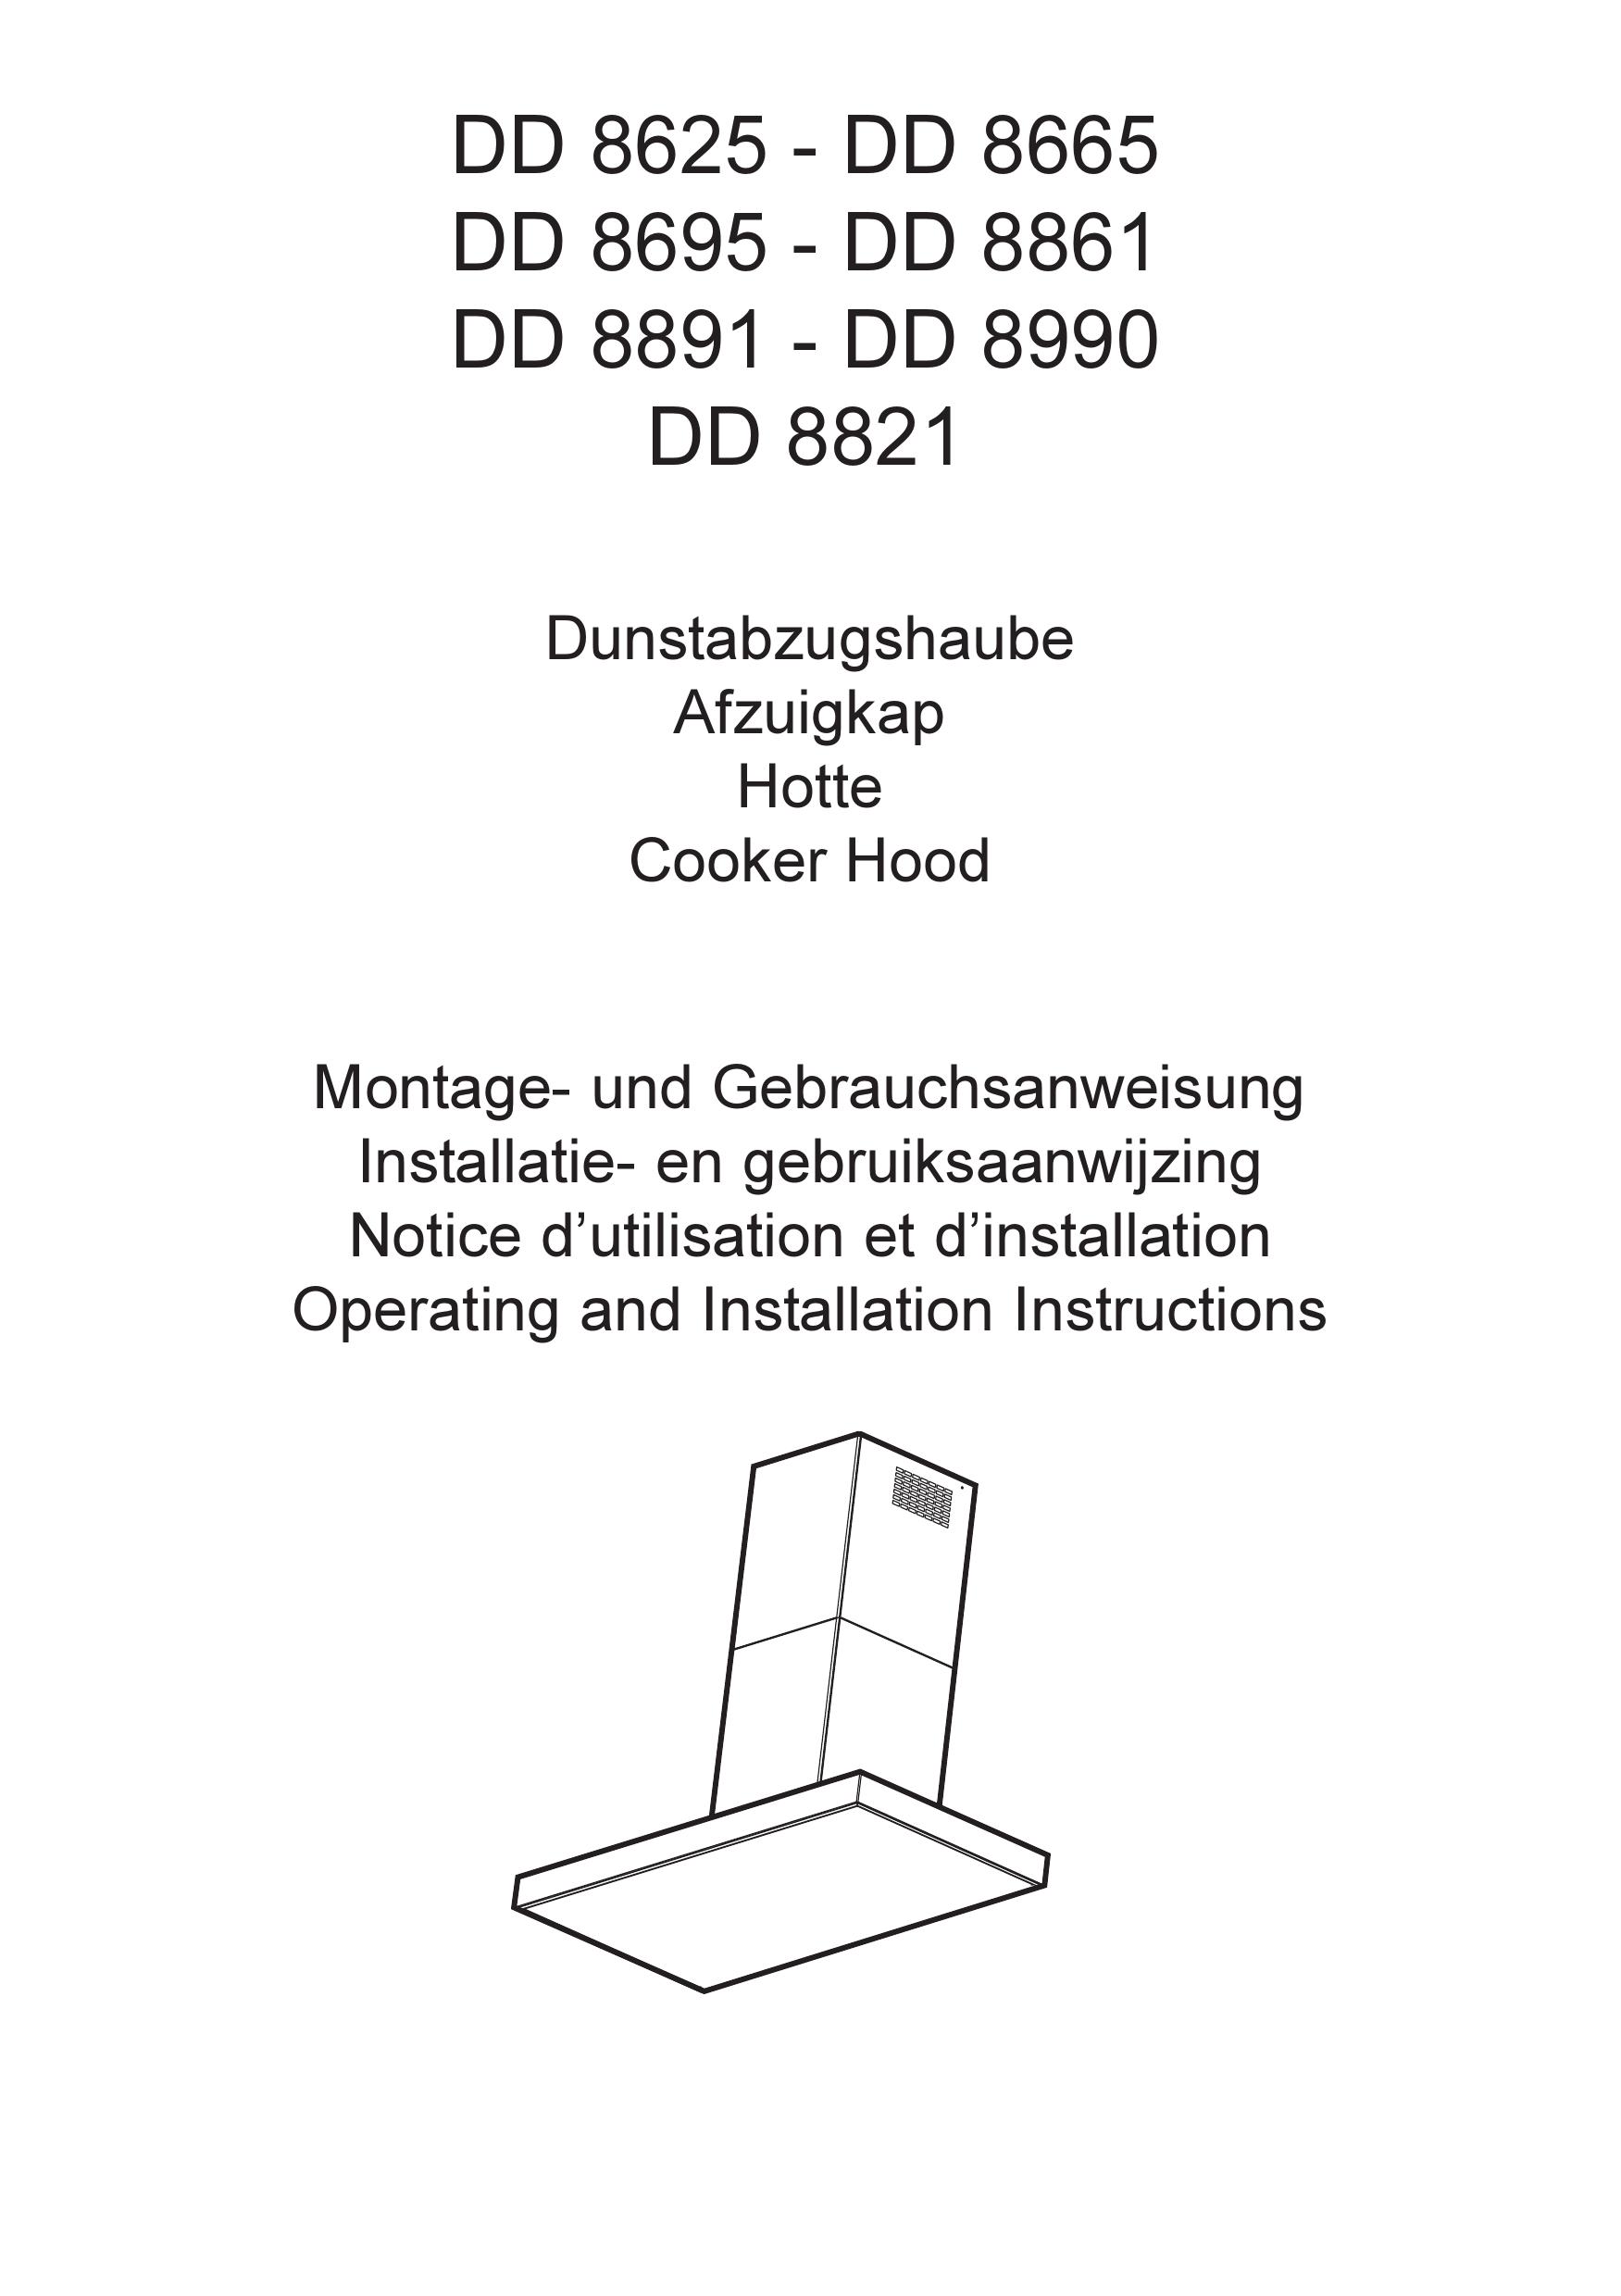 AEG DD 8861 Ventilation Hood User Manual